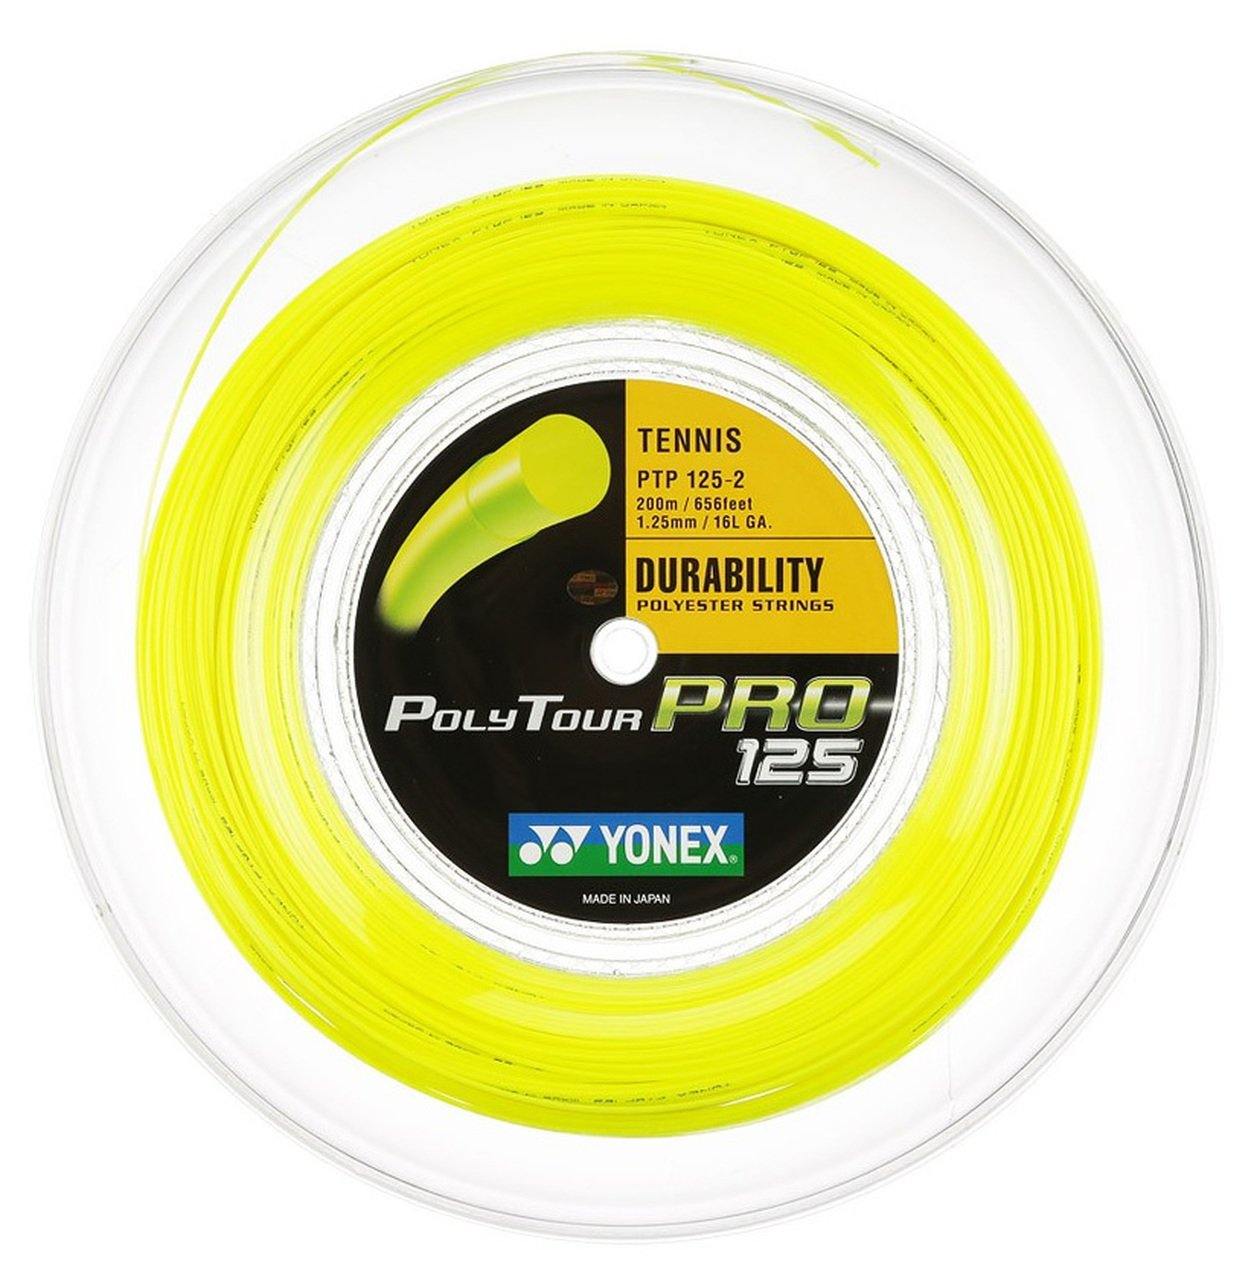 Yonex Polytour Pro 125 16L 200m Reel Tennis Strings [Yellow